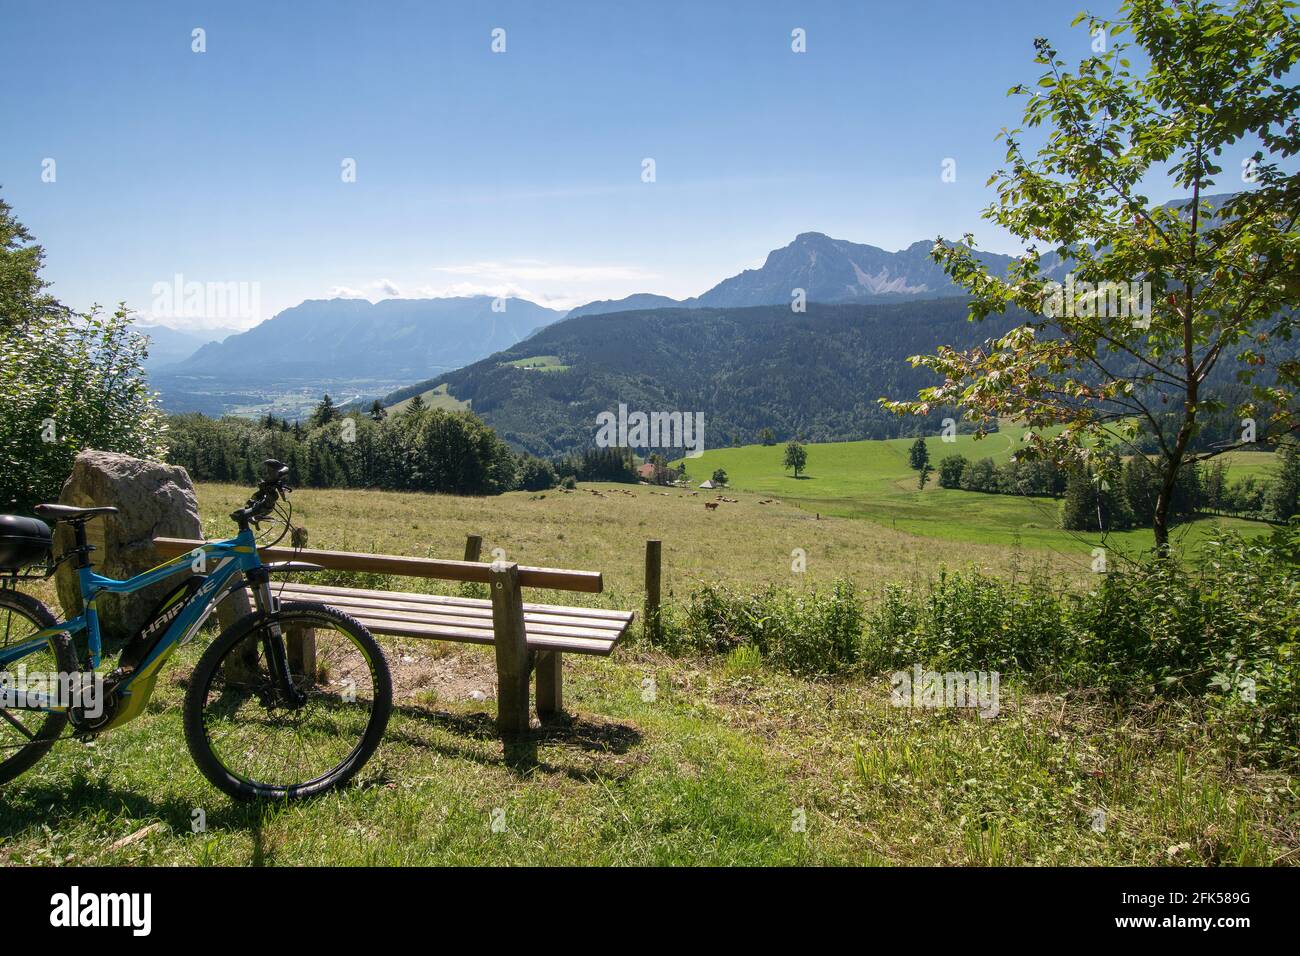 mit dem E-Bike an der Bank oberhalb von Neuhaus in der Gemeinde Anger zu Hochstaufen und Zwiesel (mit Kuhherde), Rupertiwinkel, Berchtesgadener Land, Stock Photo